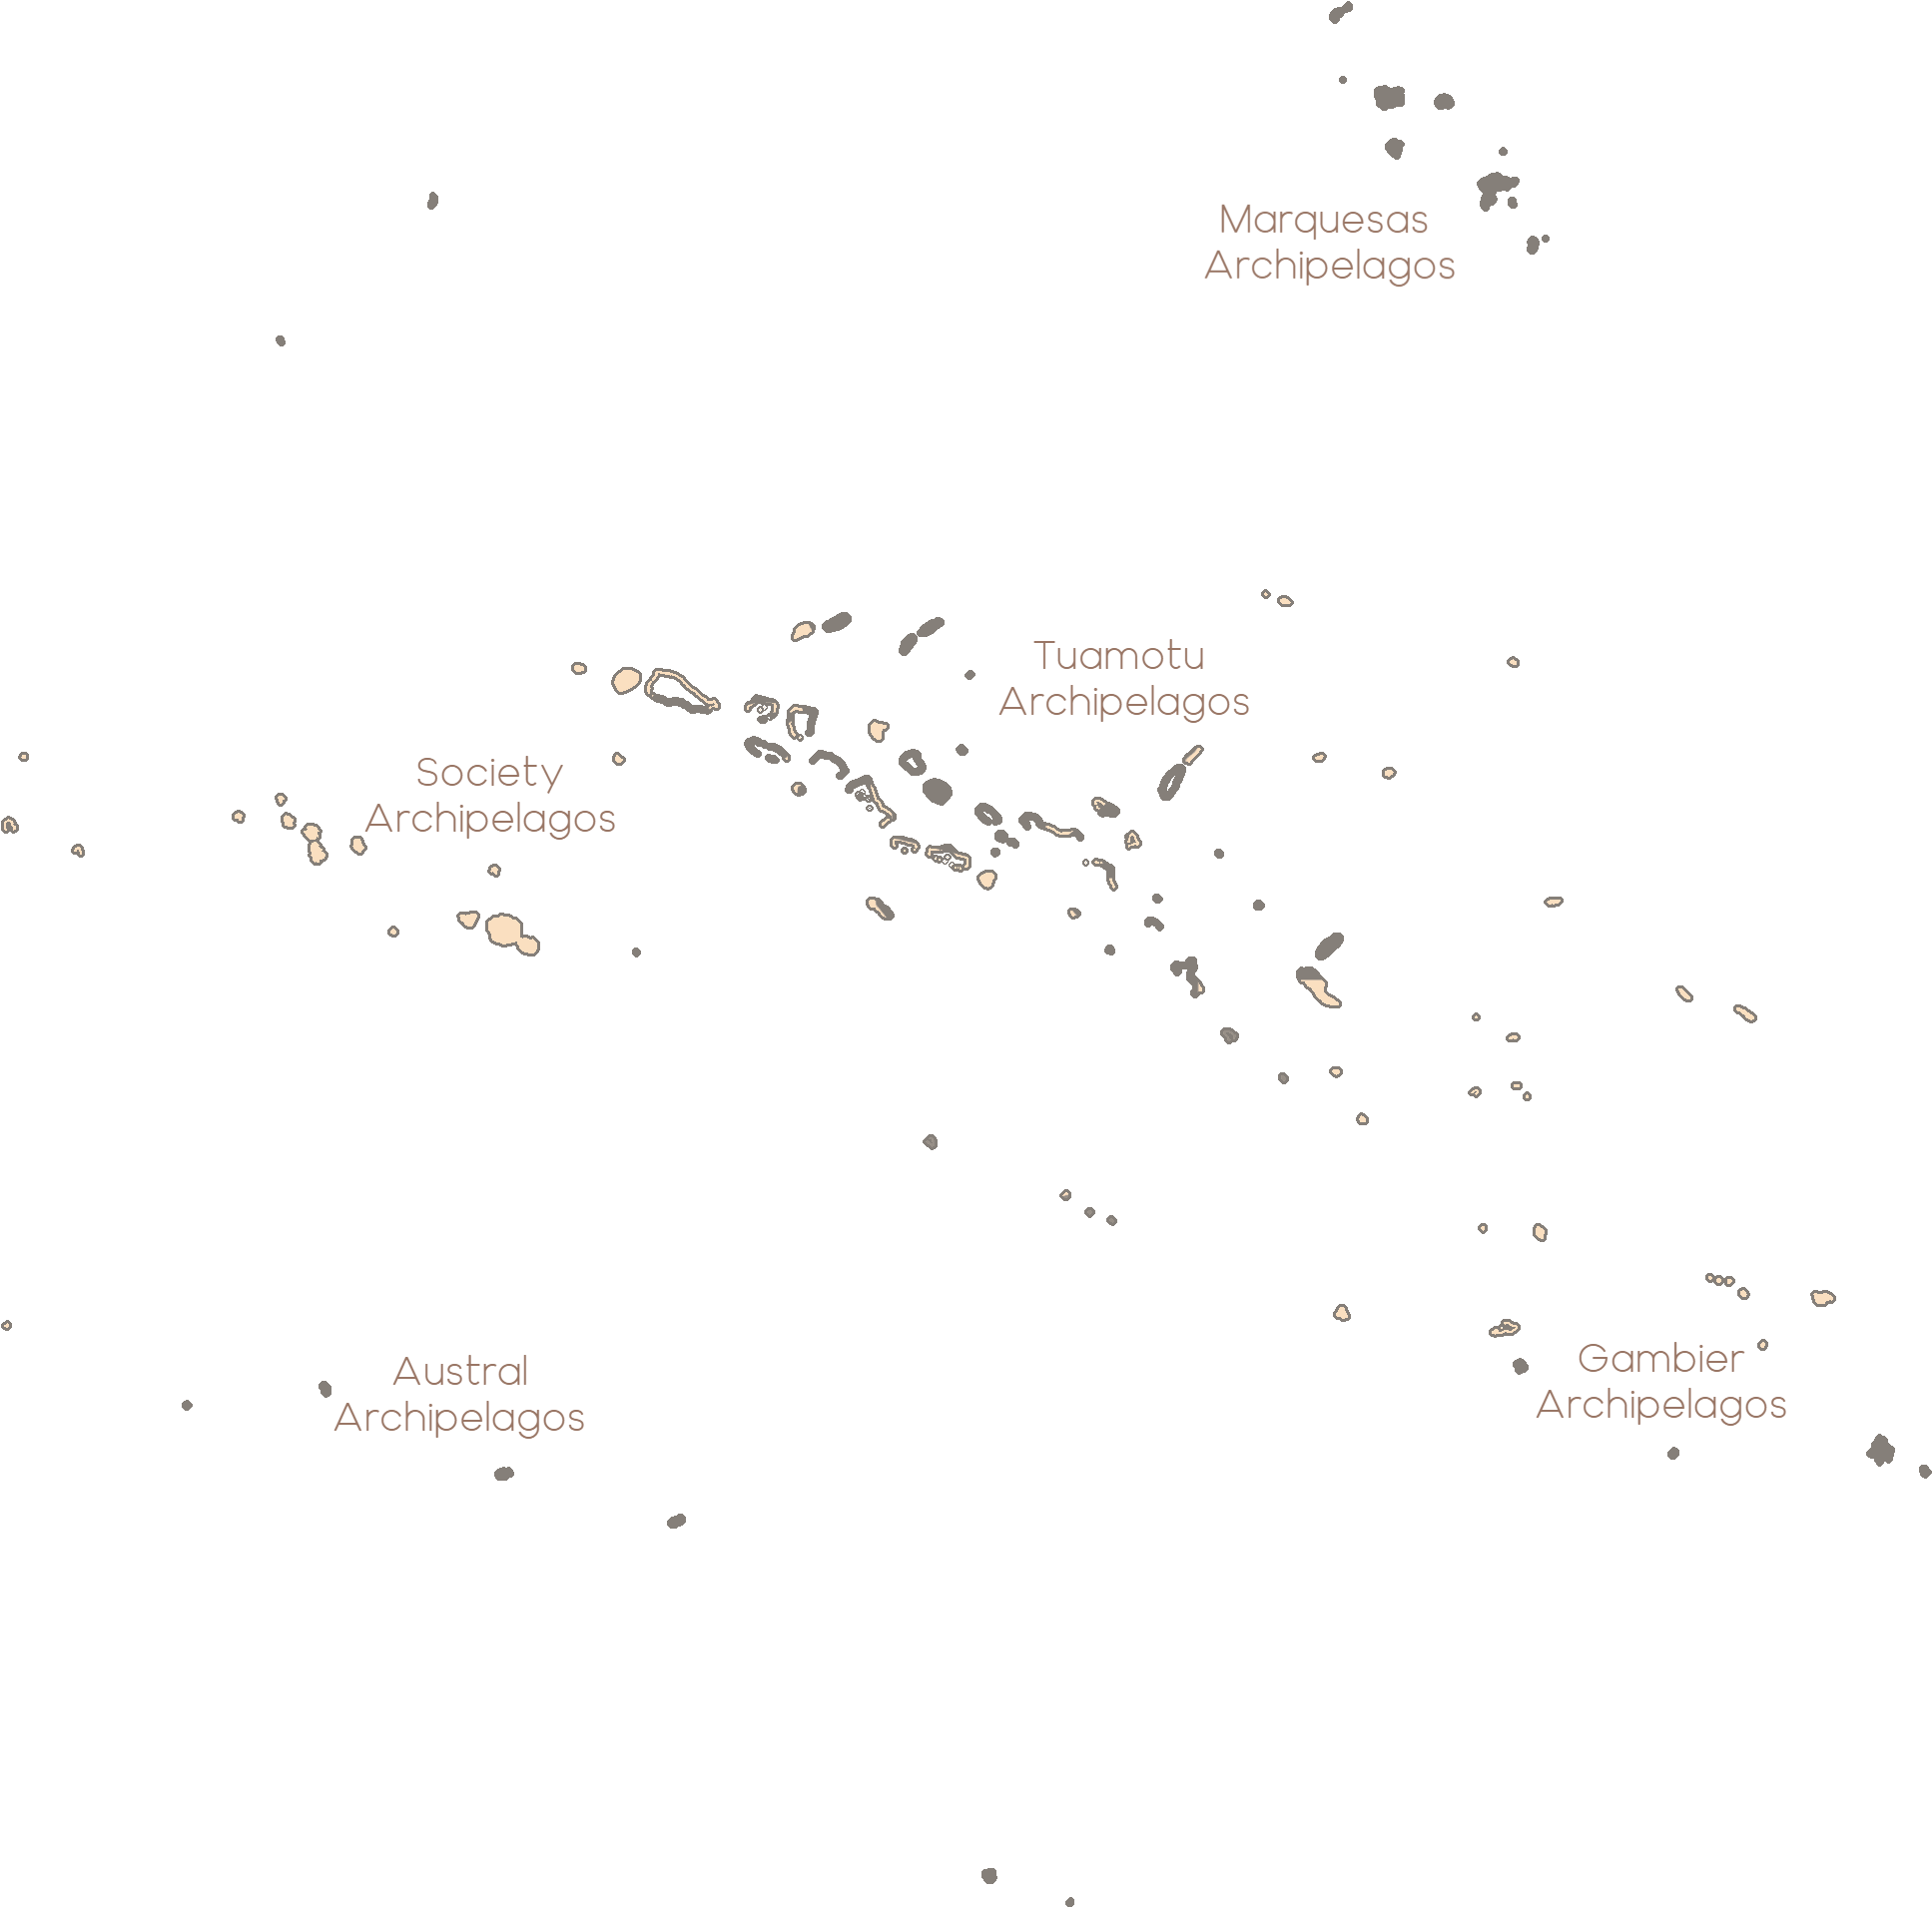 Archipels de Polynésie française